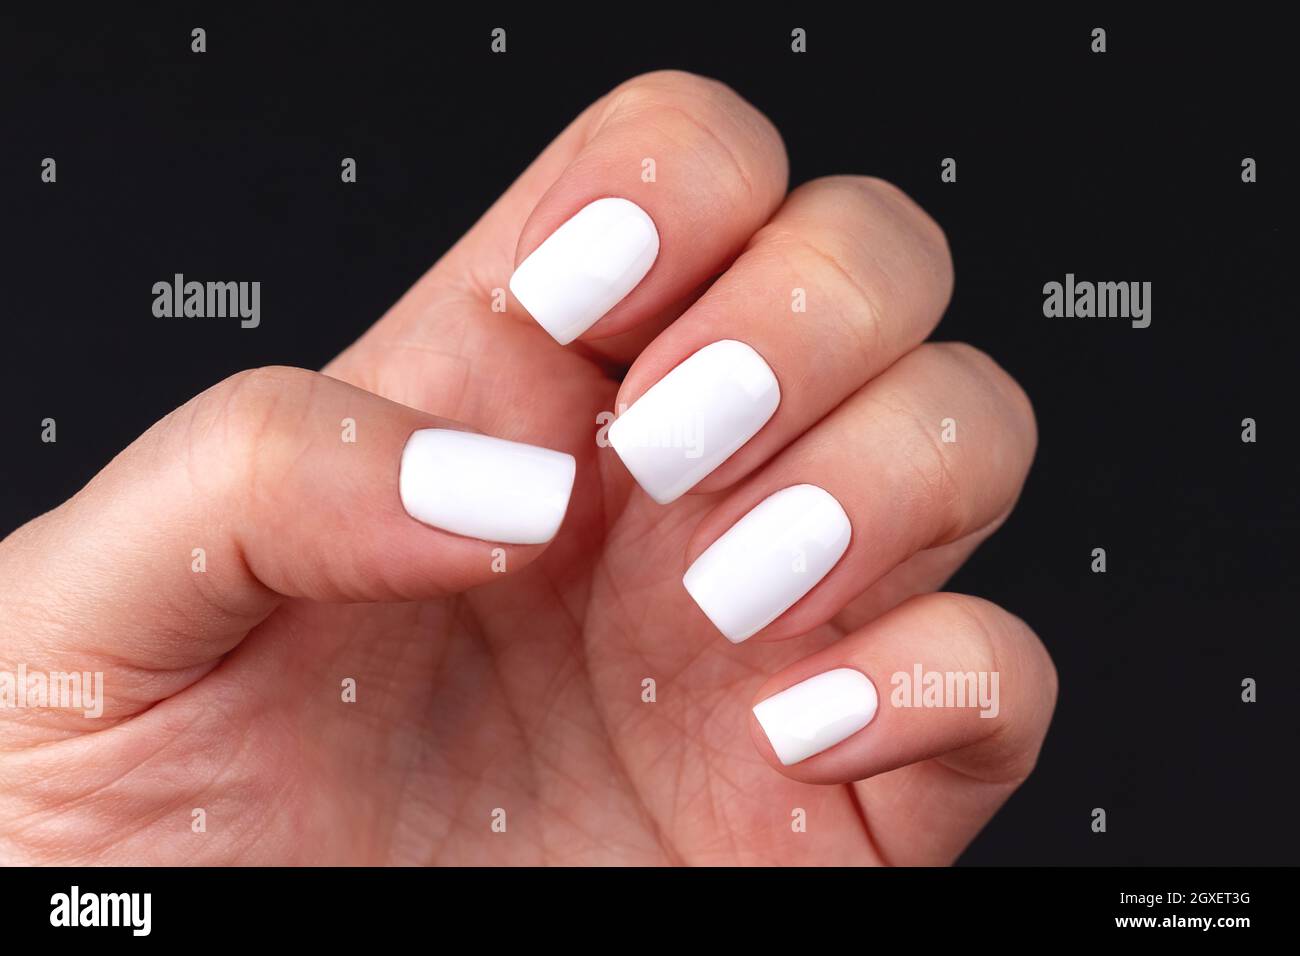 Weibliche Hand mit schöner Maniküre - weiße Nägel auf schwarzem  Hintergrund. Nagelpflegekonzept Stockfotografie - Alamy